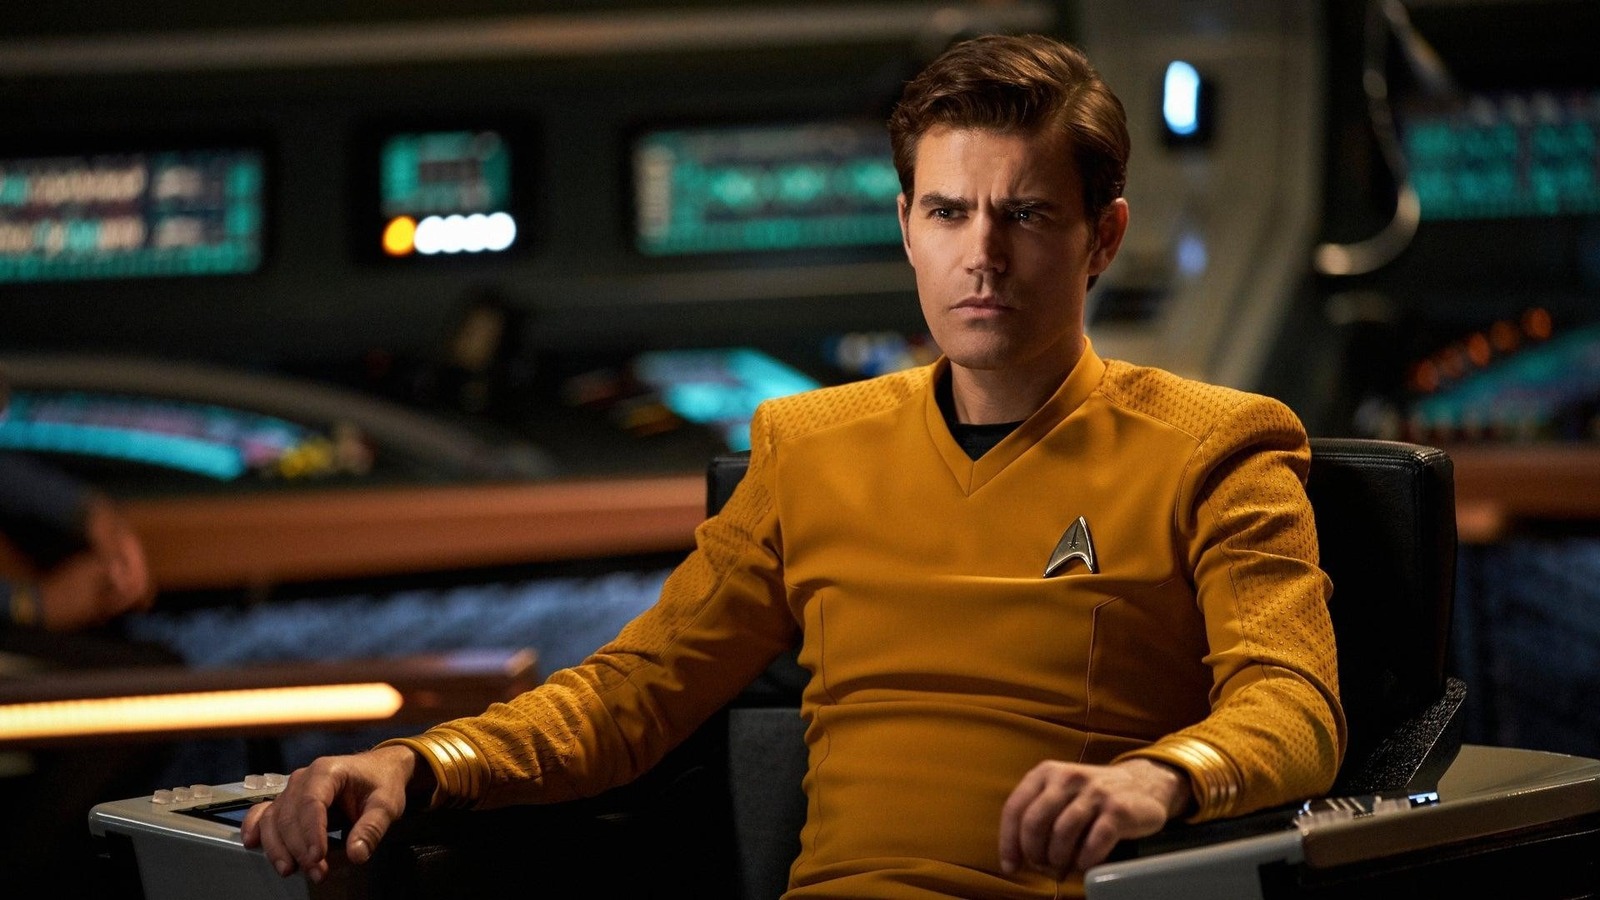 #How The Vampire Diaries Prepared Paul Wesley To Play Star Trek’s Captain Kirk